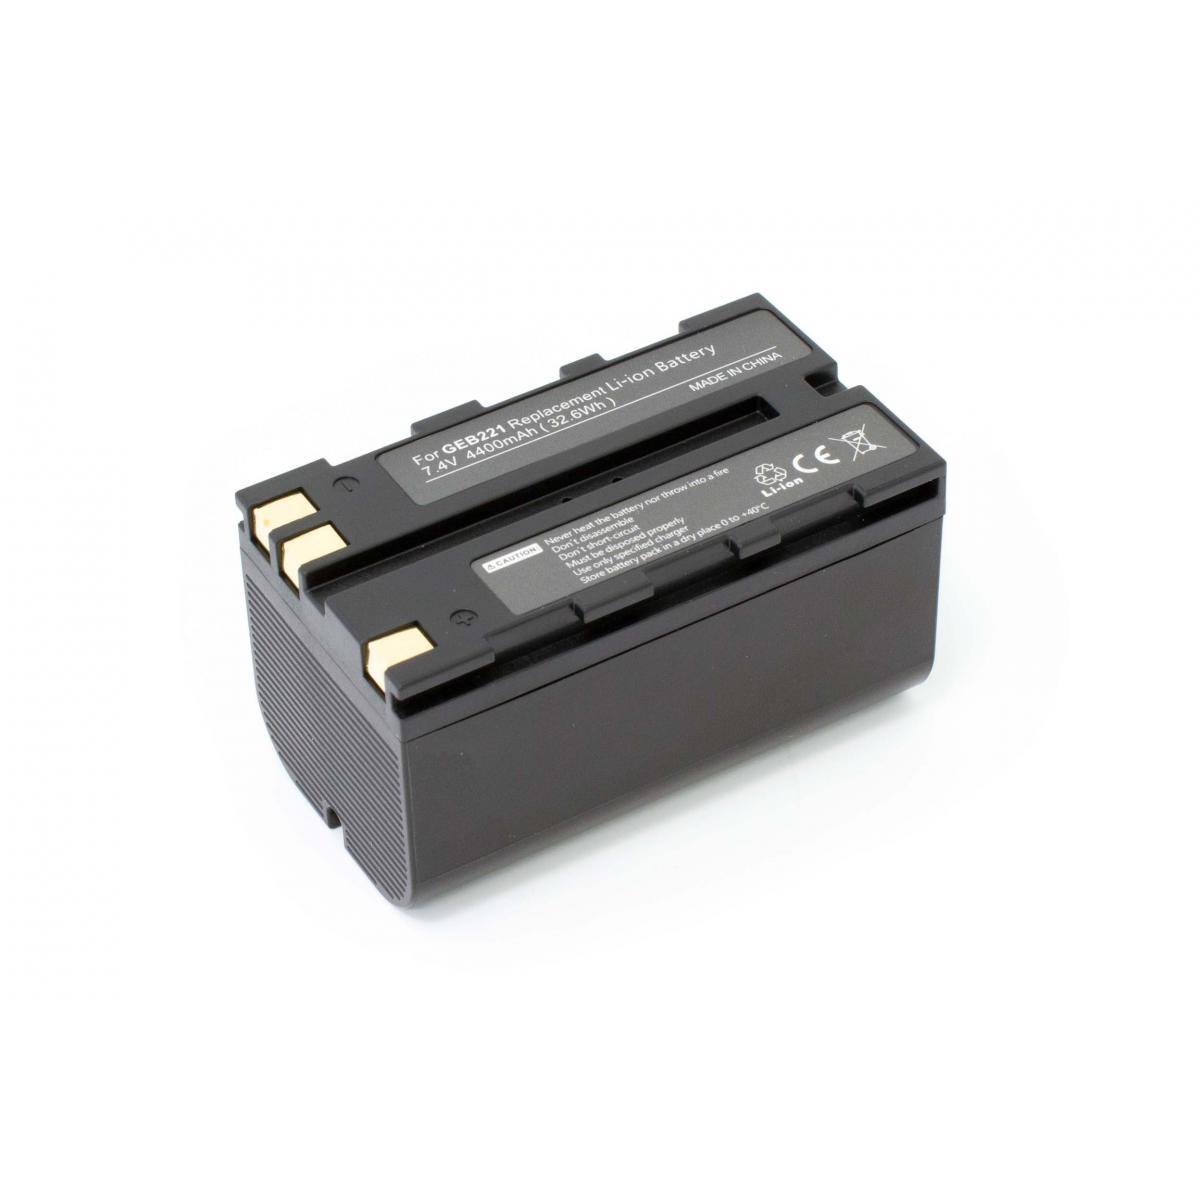 Vhbw - vhbw batterie remplace Leica GEB212, GEB90, GEB221 pour appareil photo DSLR (4400mAh, 7,4V, Li-Ion) - Piles rechargeables